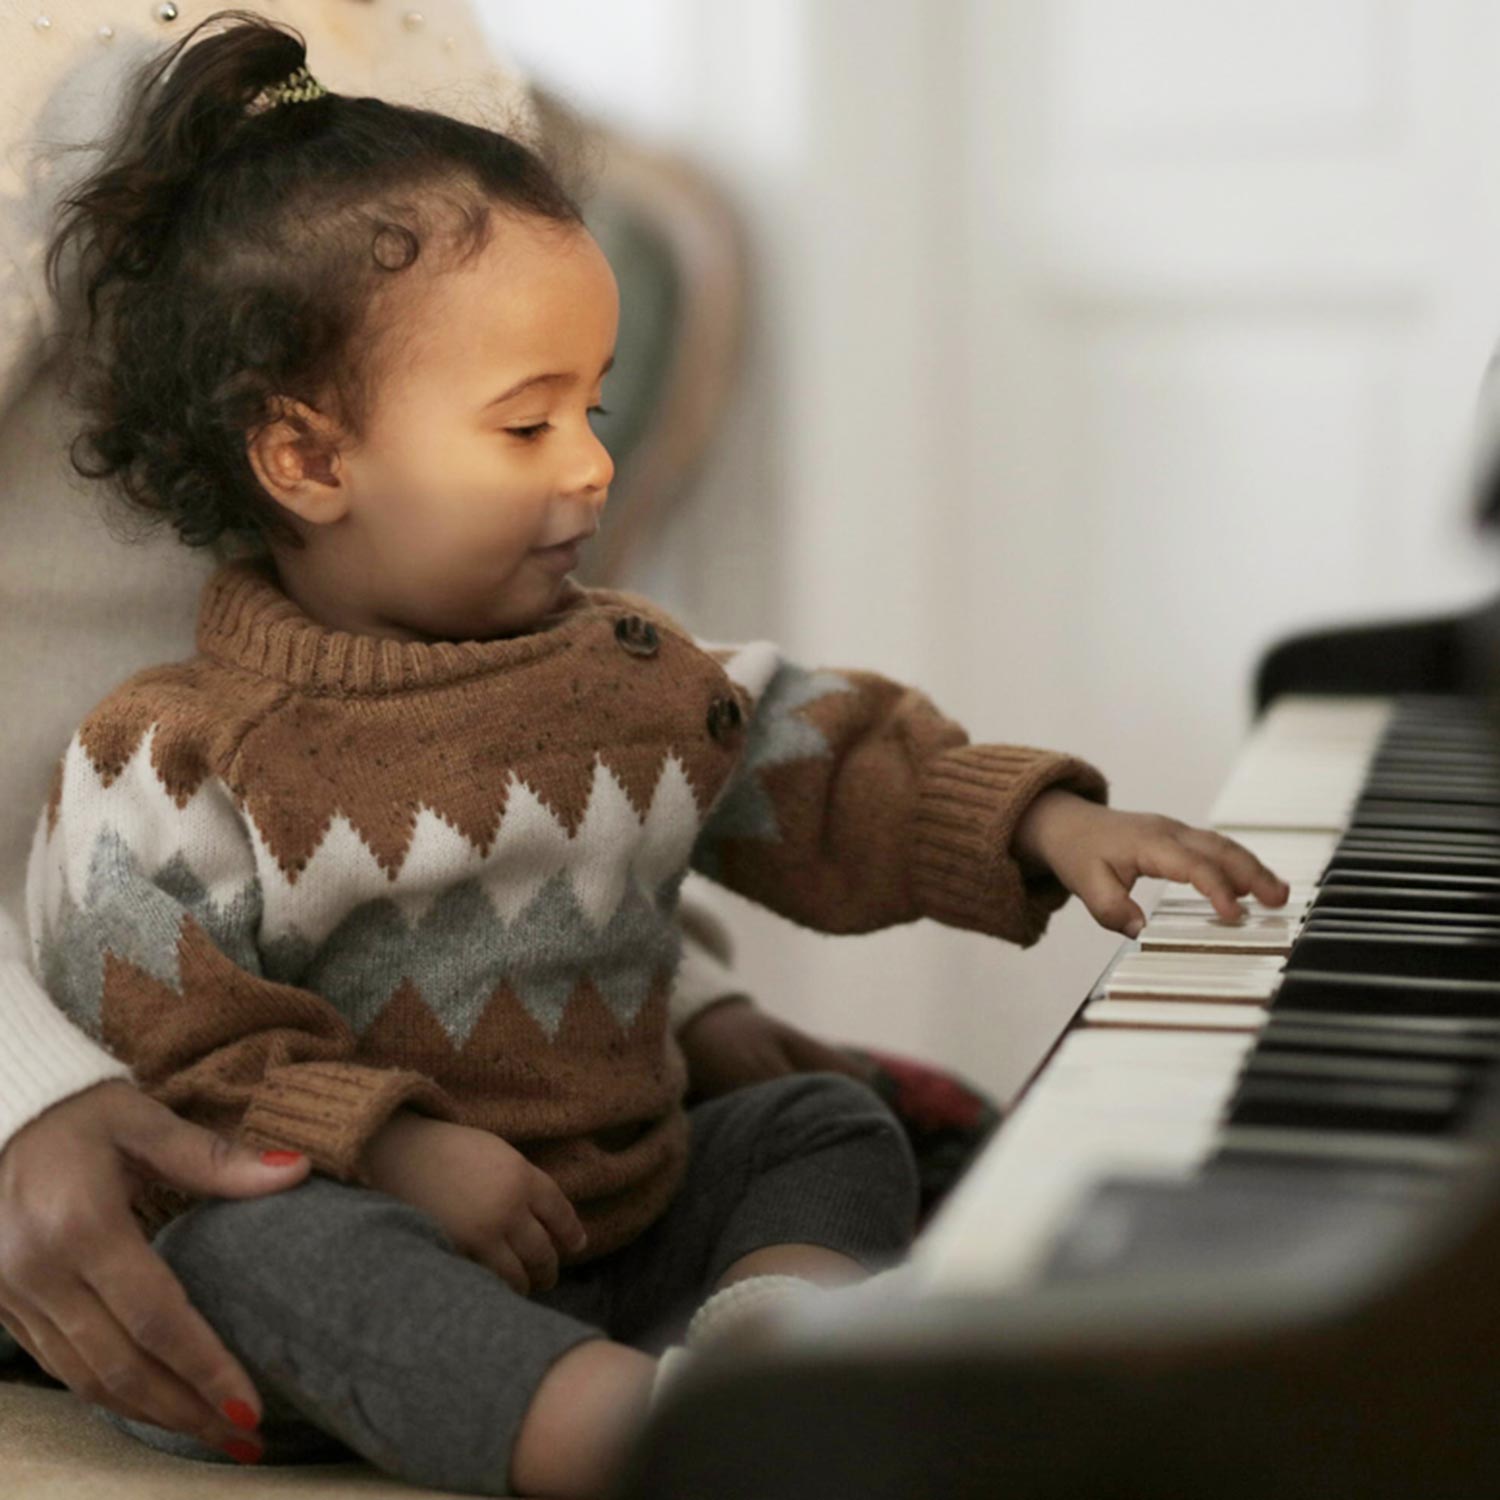 Aus Diesen Gründen sollte Dein Kind ein Musikinstrument erlernen